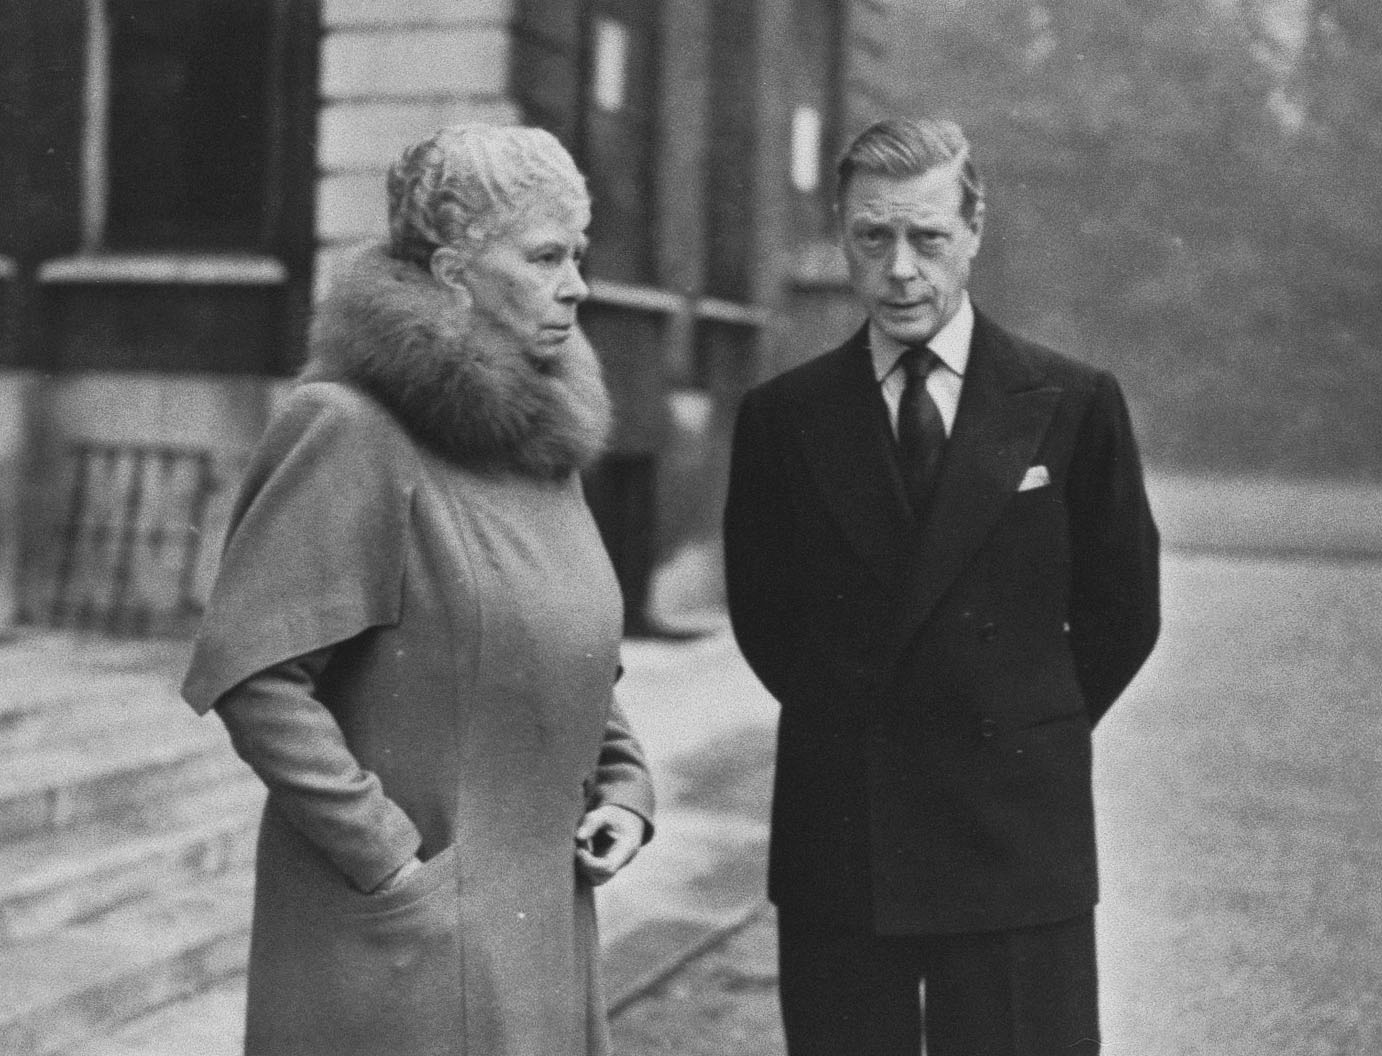 瑪麗王后與已經退位的長子溫莎公爵愛德華在一起。